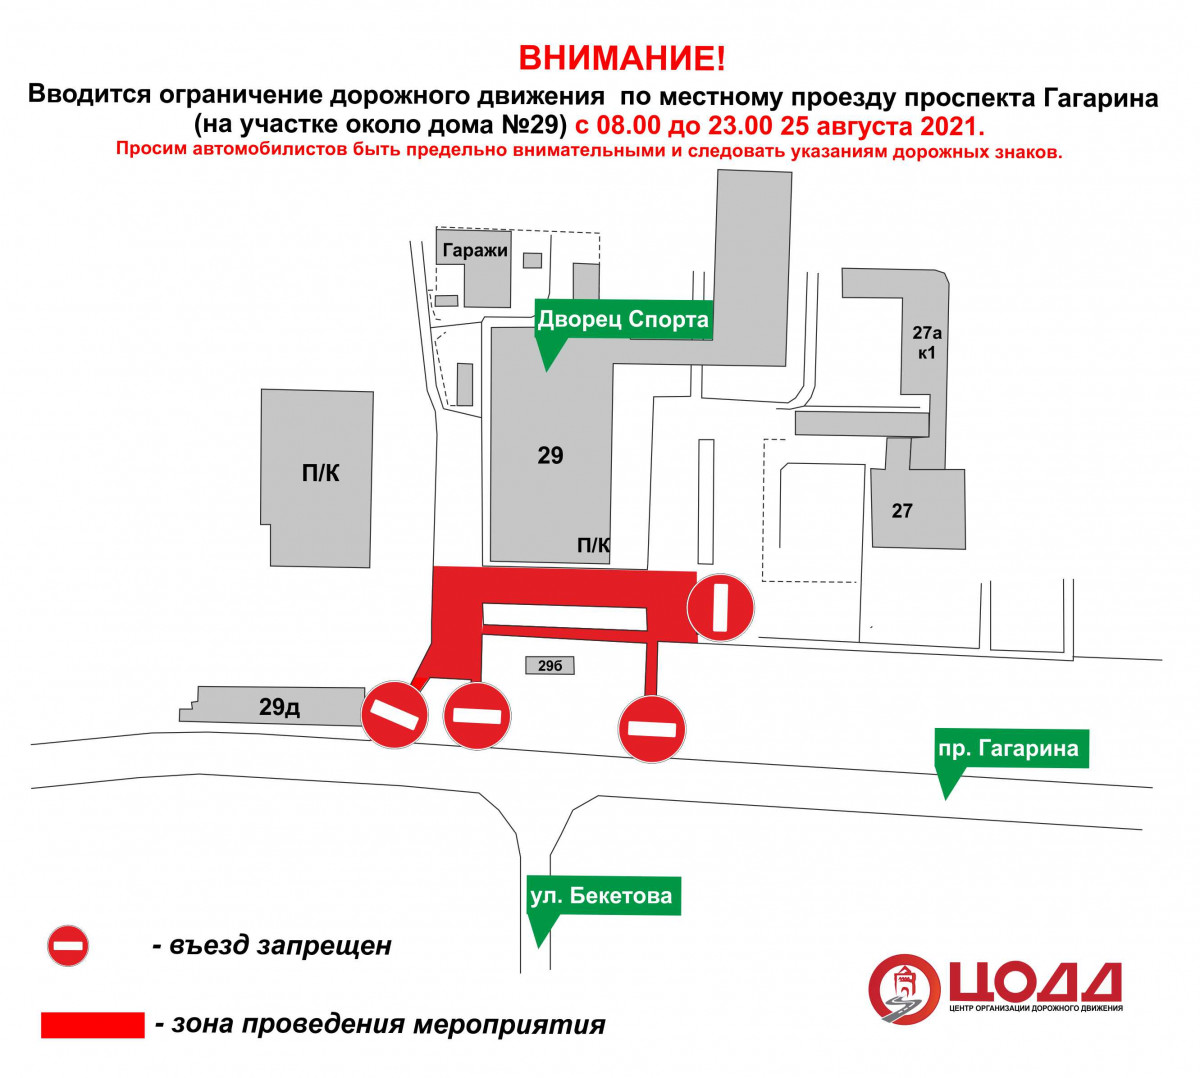 Движение транспорта будет ограничено на проспекте Гагарина 25 августа